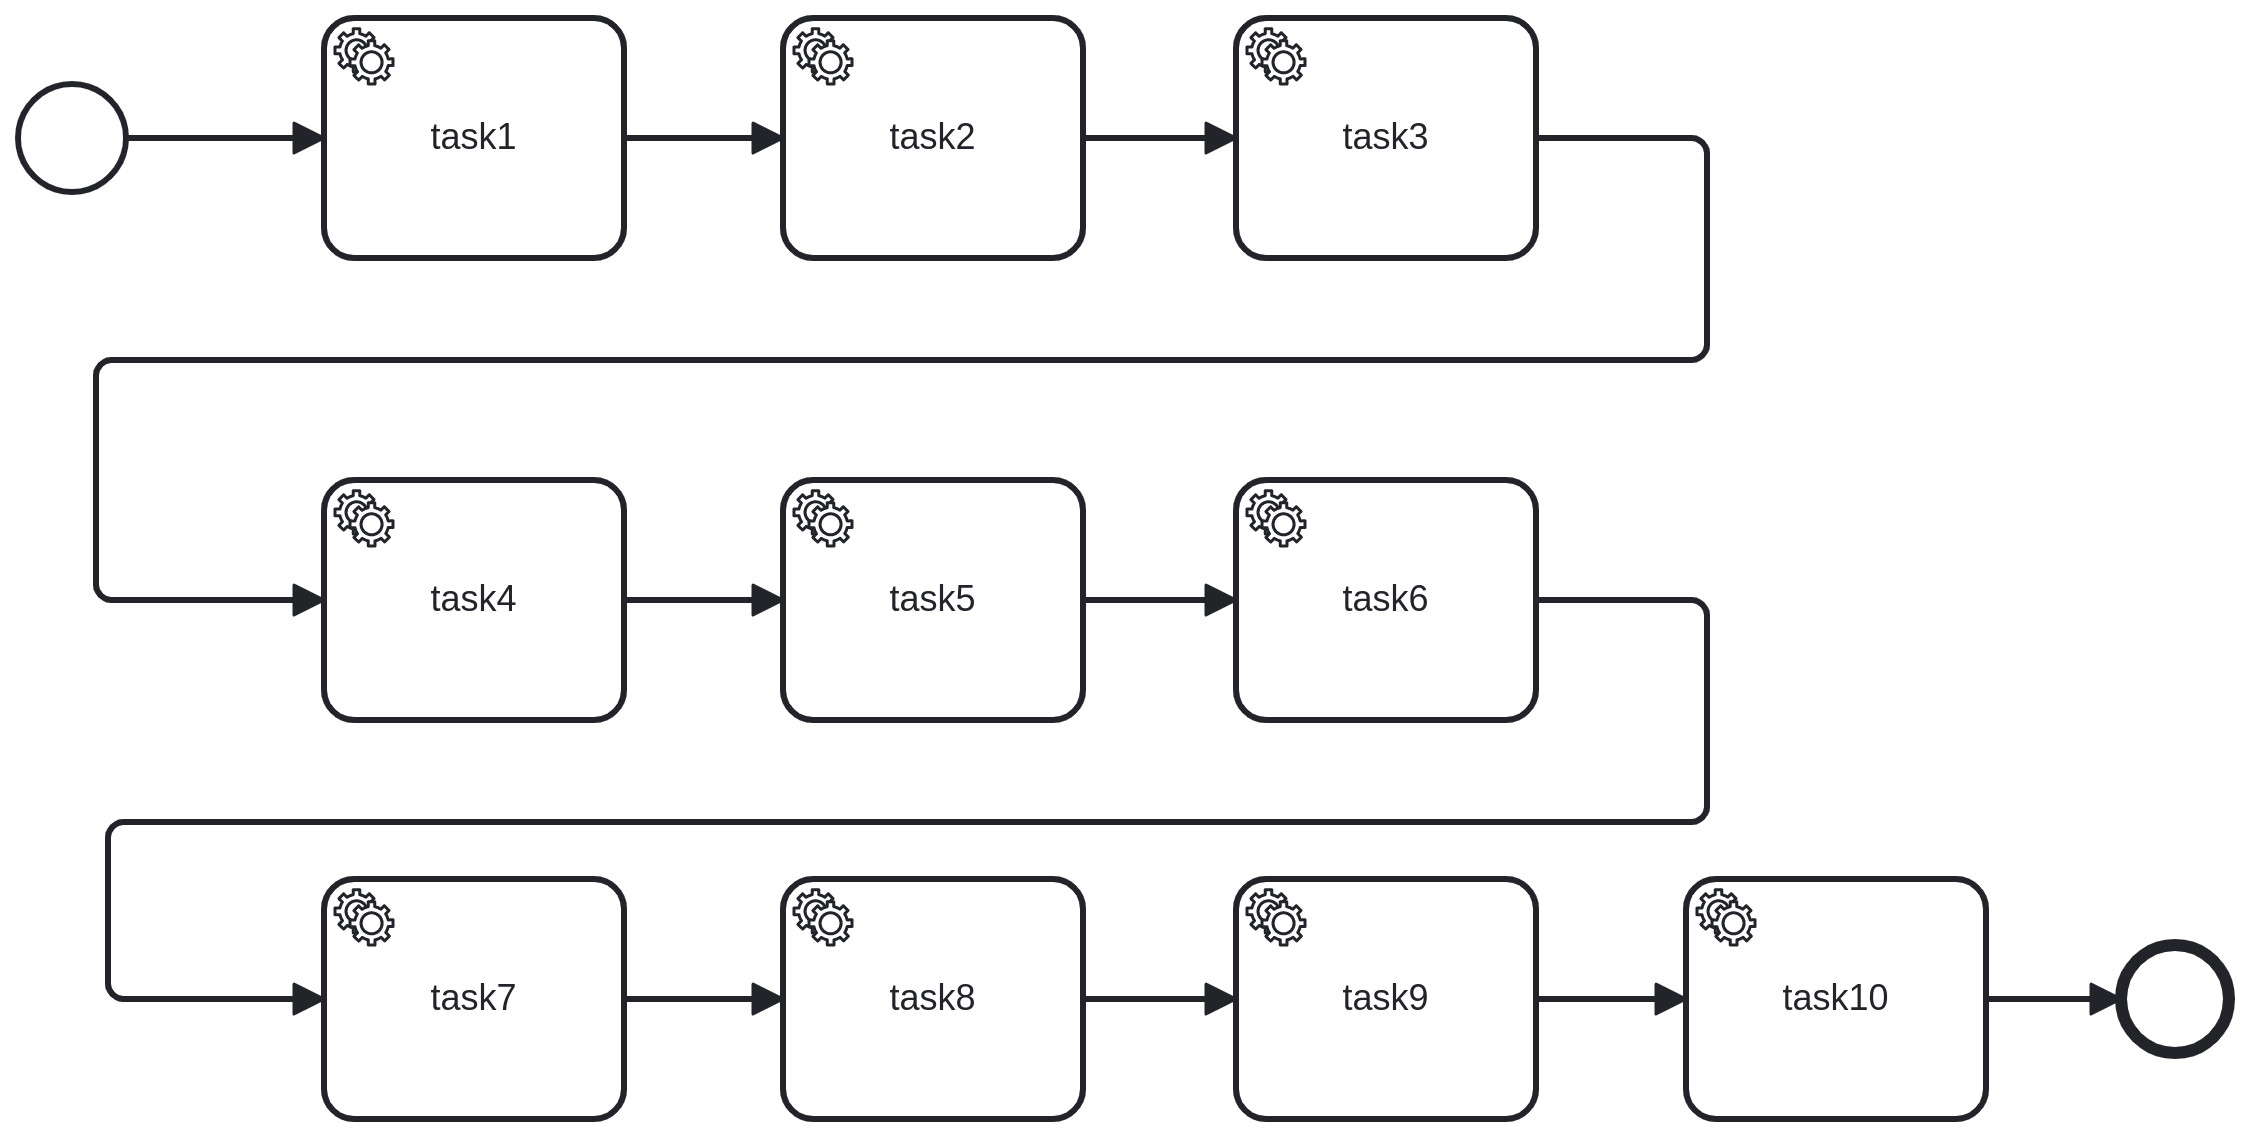 A ten tasks sequence BPMN process: start -&gt; task_1 -&gt; task_2 -&gt; ... -&gt; task_10 -&gt; end